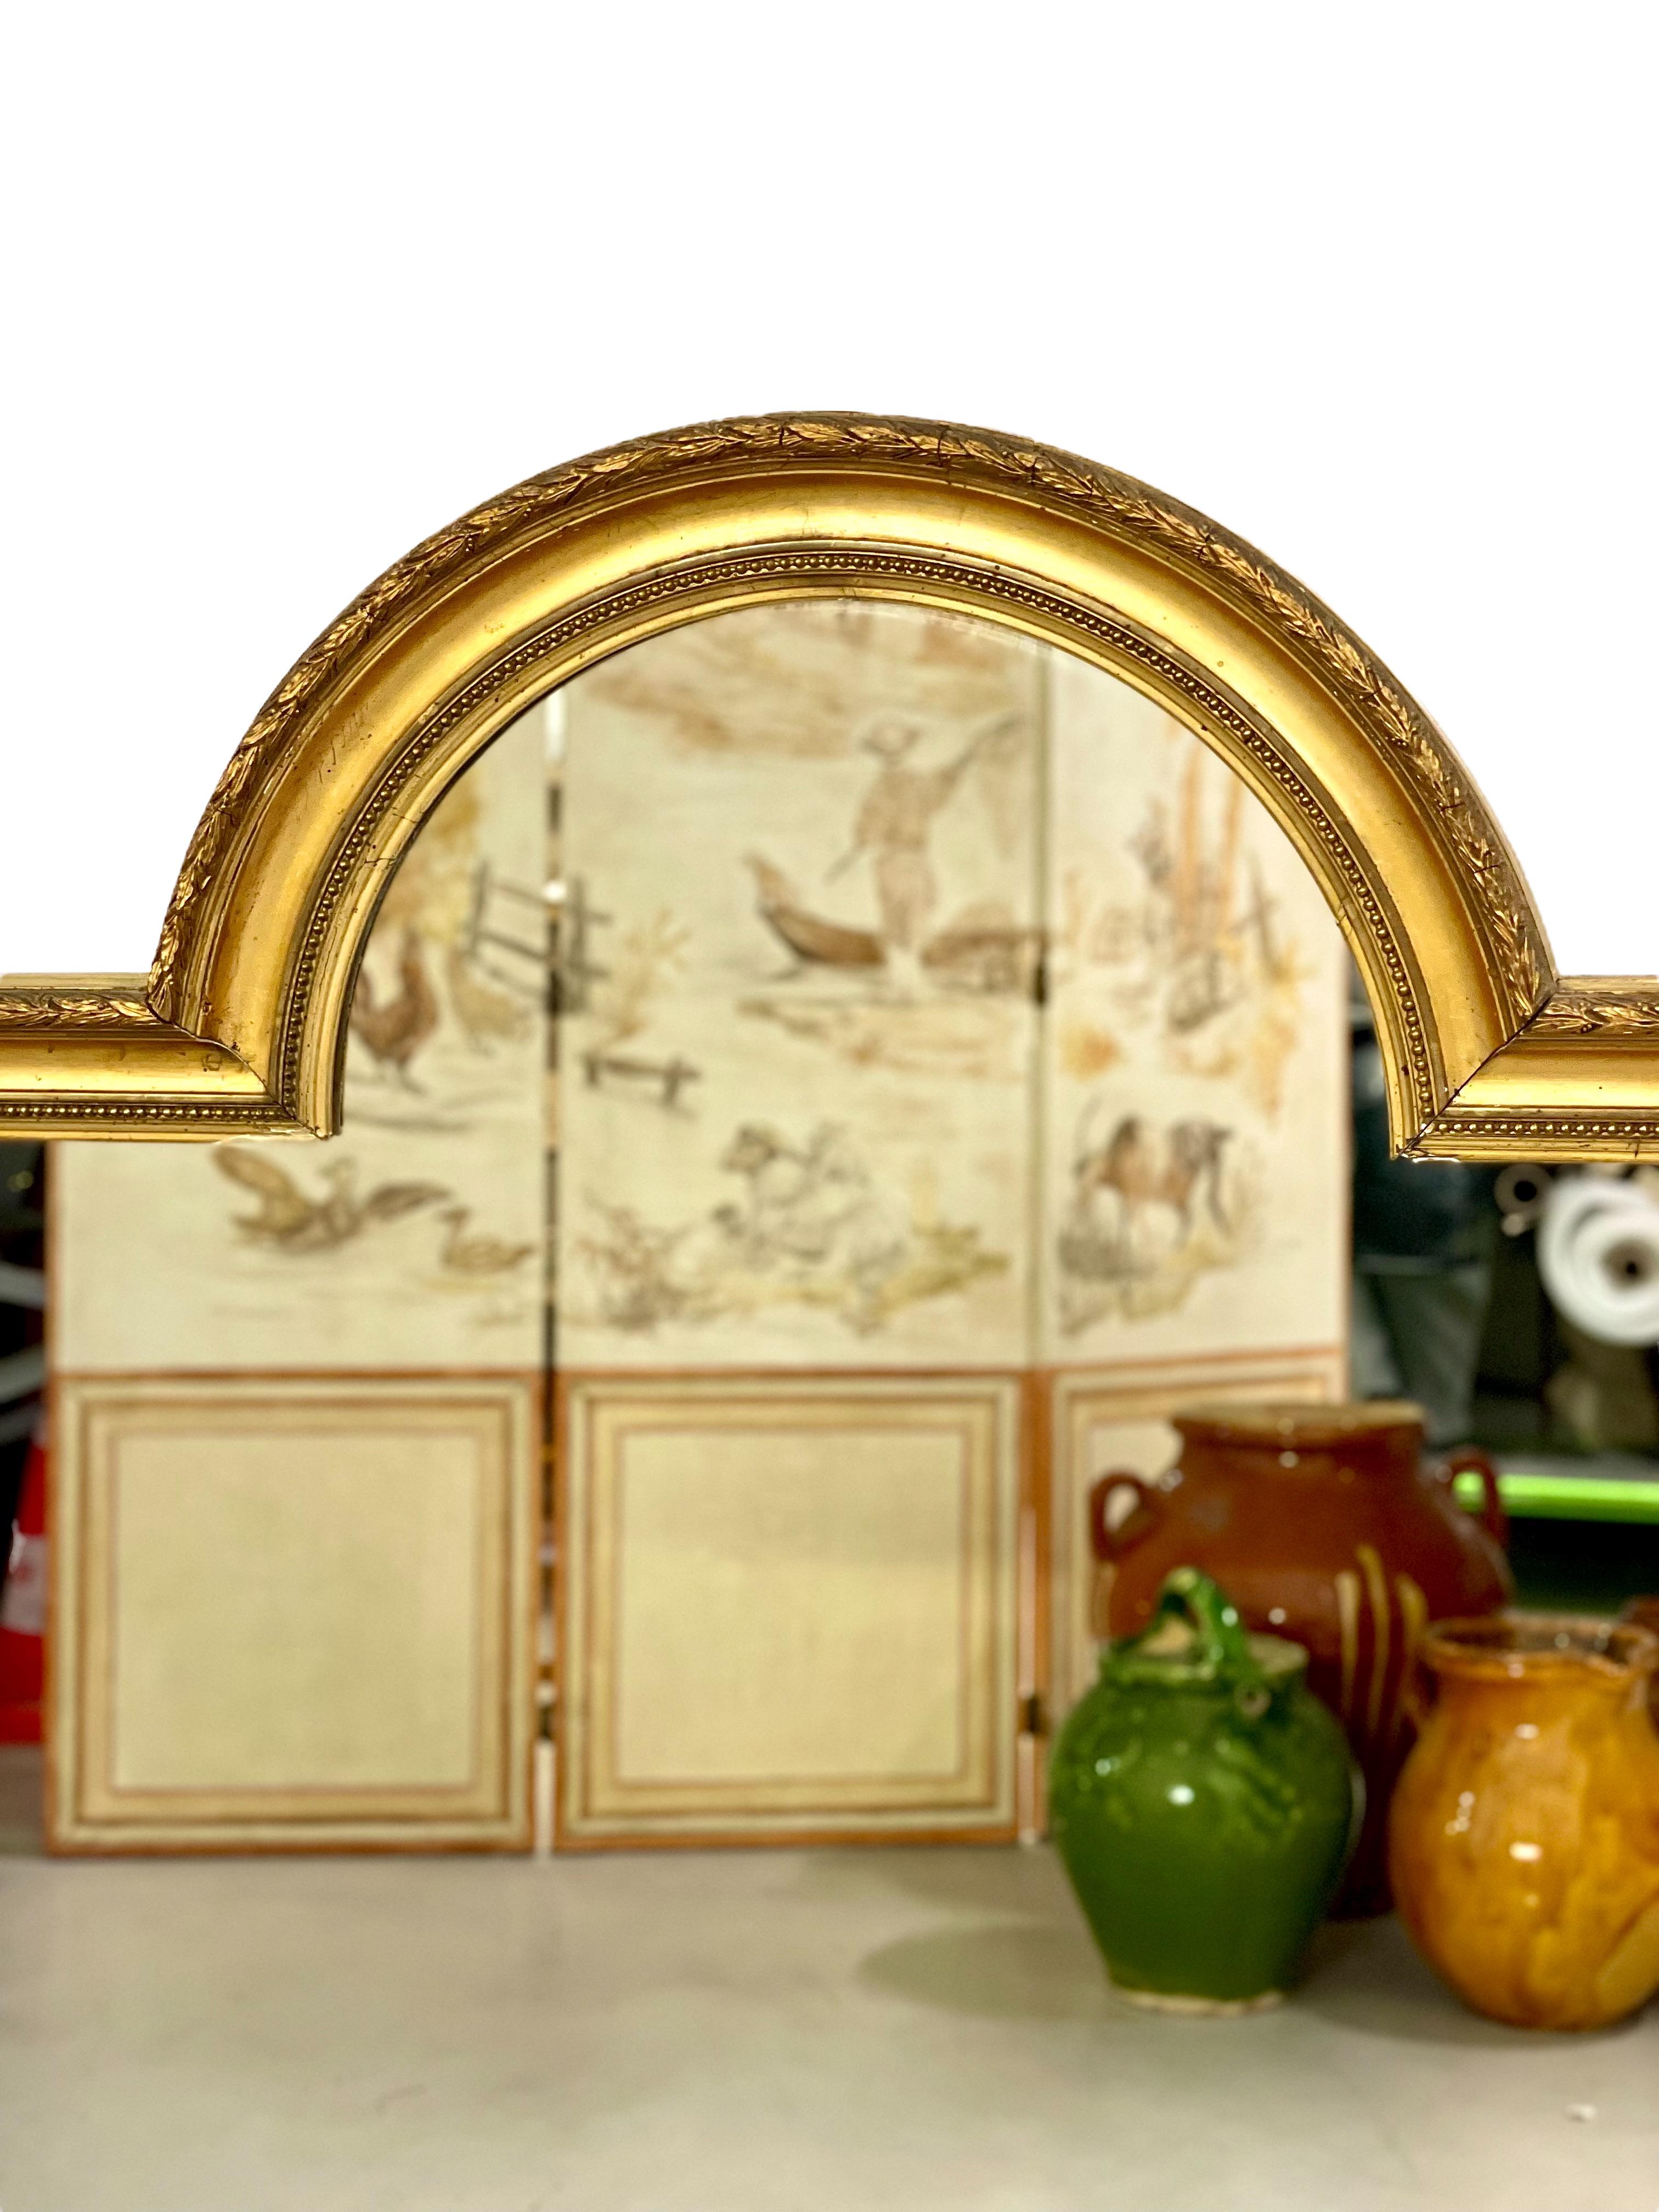 Miroir à trumeau de style Louis XVI, de forme intéressante et inhabituelle, avec arc central, en bois doré et stuc. Le cadre extérieur présente une simple chaîne de feuilles d'olivier, tandis que la bordure intérieure est ornée de perles classiques